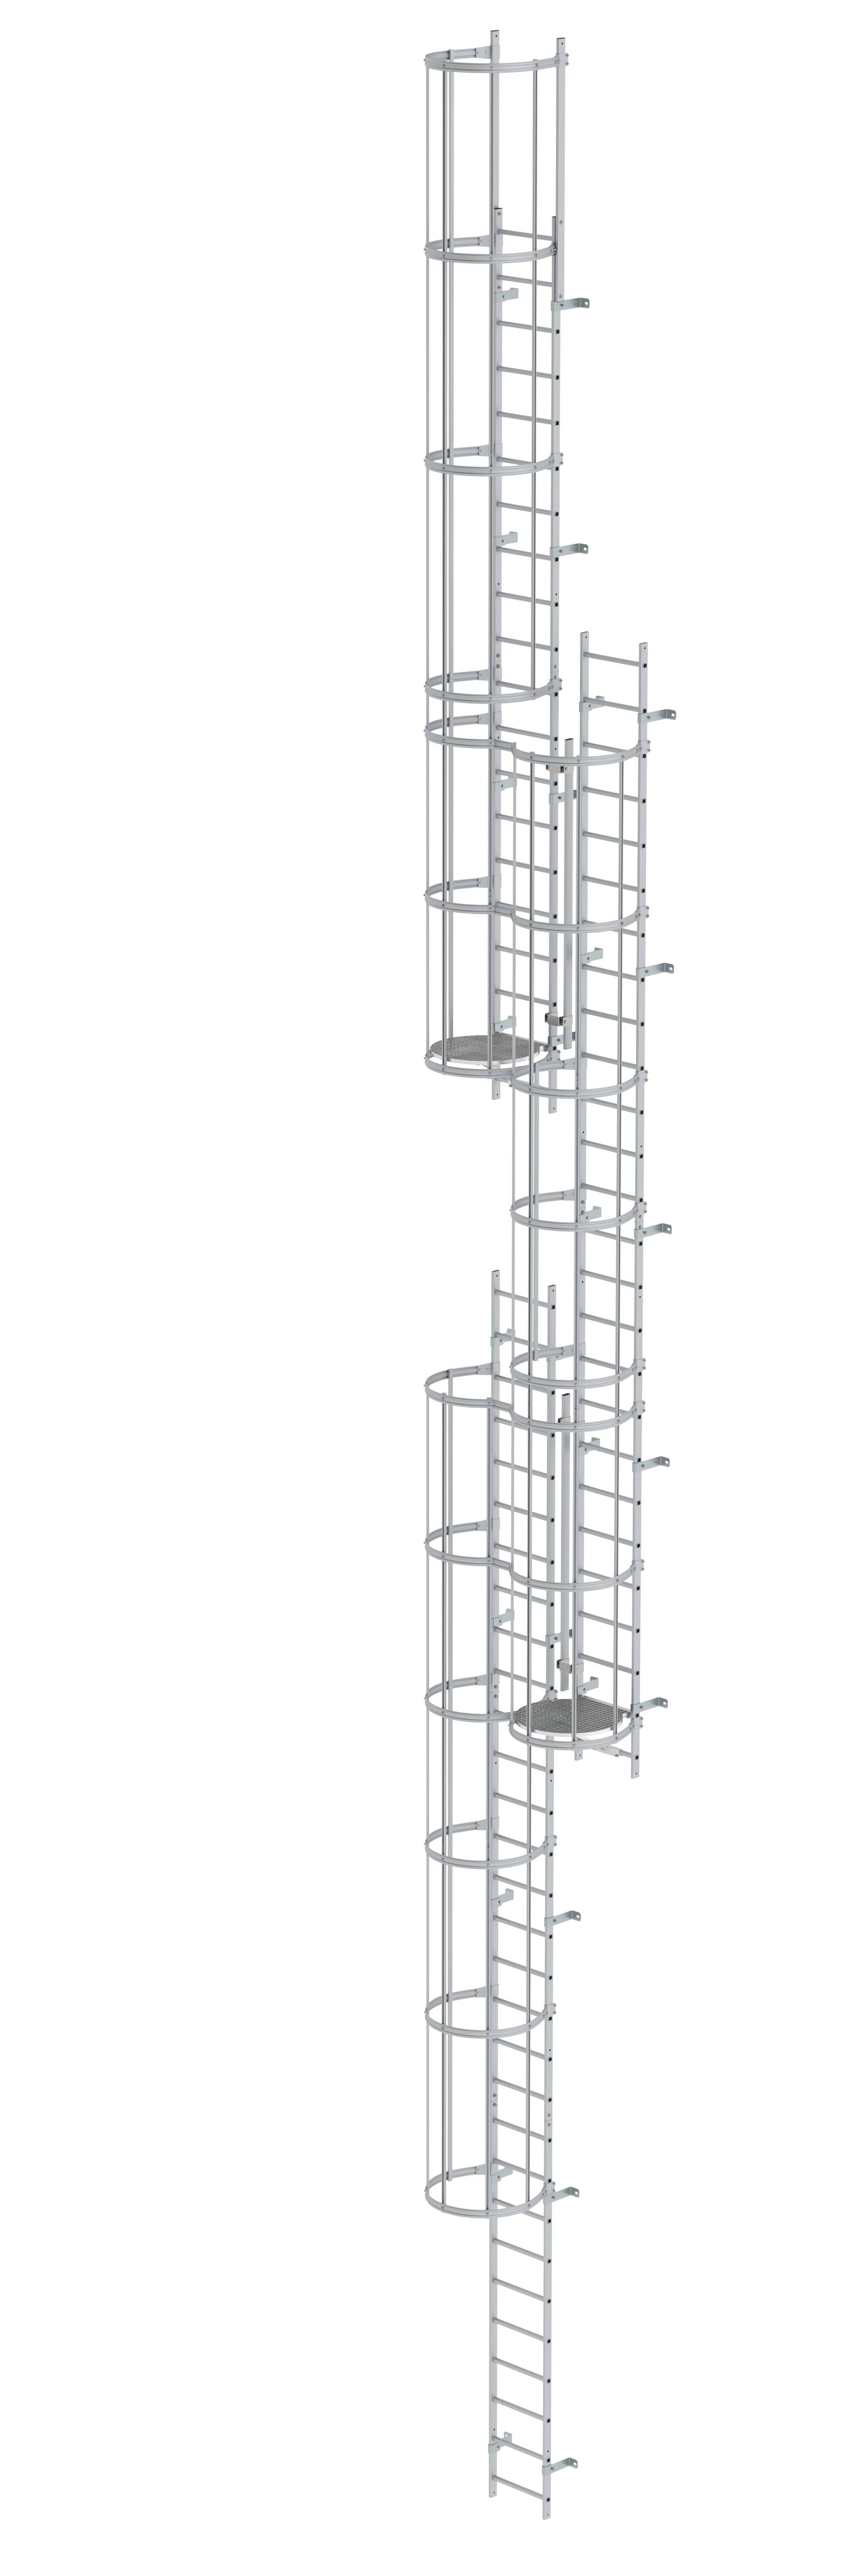 Mehrzügige Steigleiter mit Rückenschutz (Maschinen) Aluminium eloxiert 16,32m